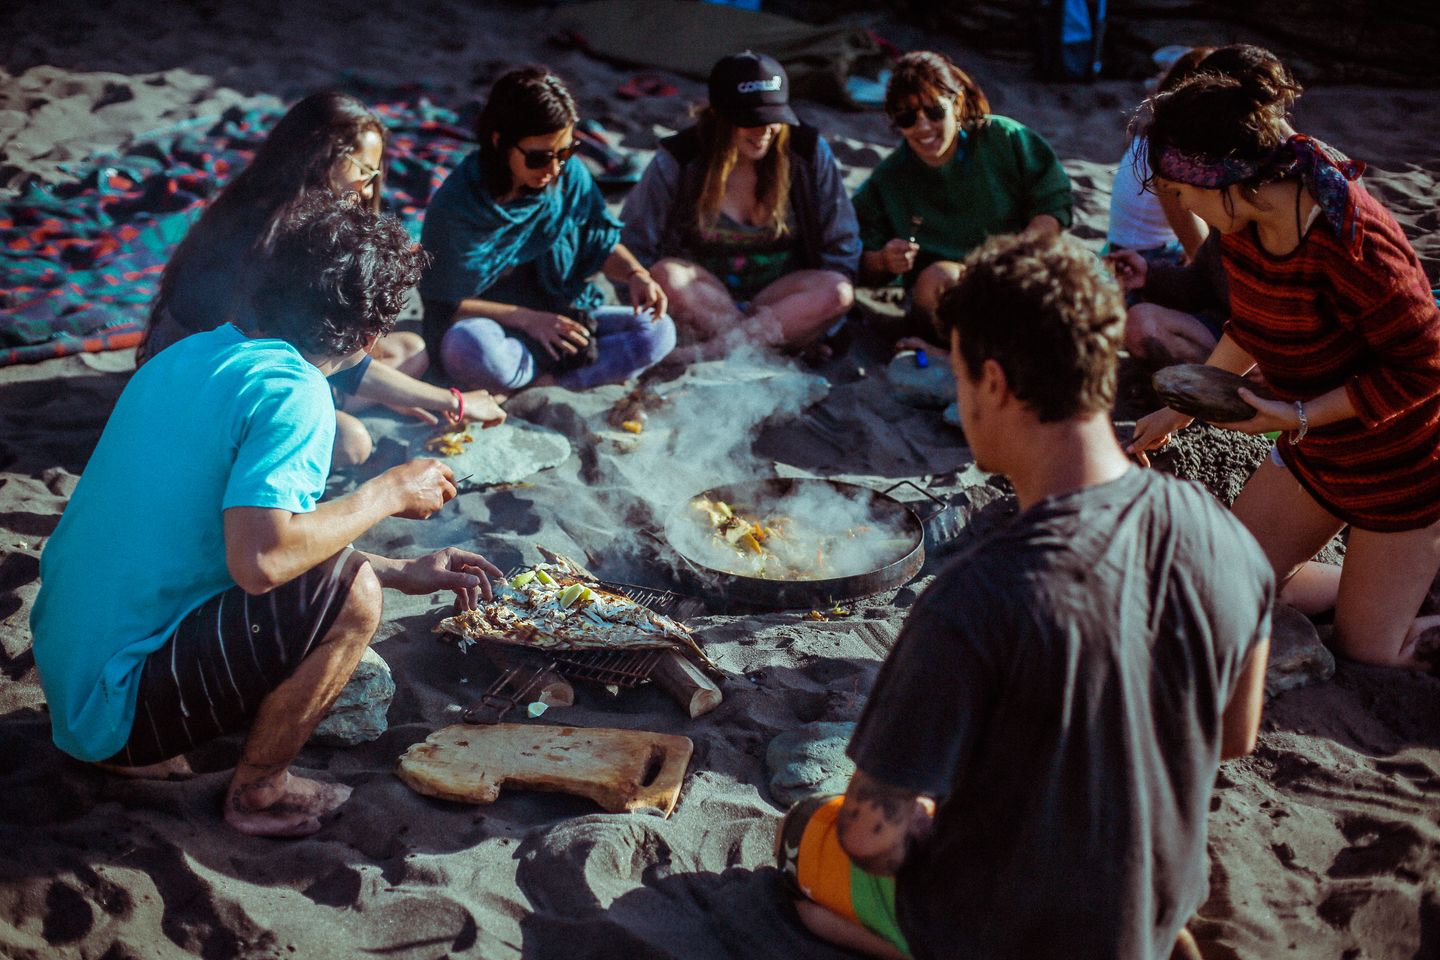 Zum Bild: Chile: Nach einer Runde Surfen schmeckt das Essen mit Freunden gleich noch viel besser.